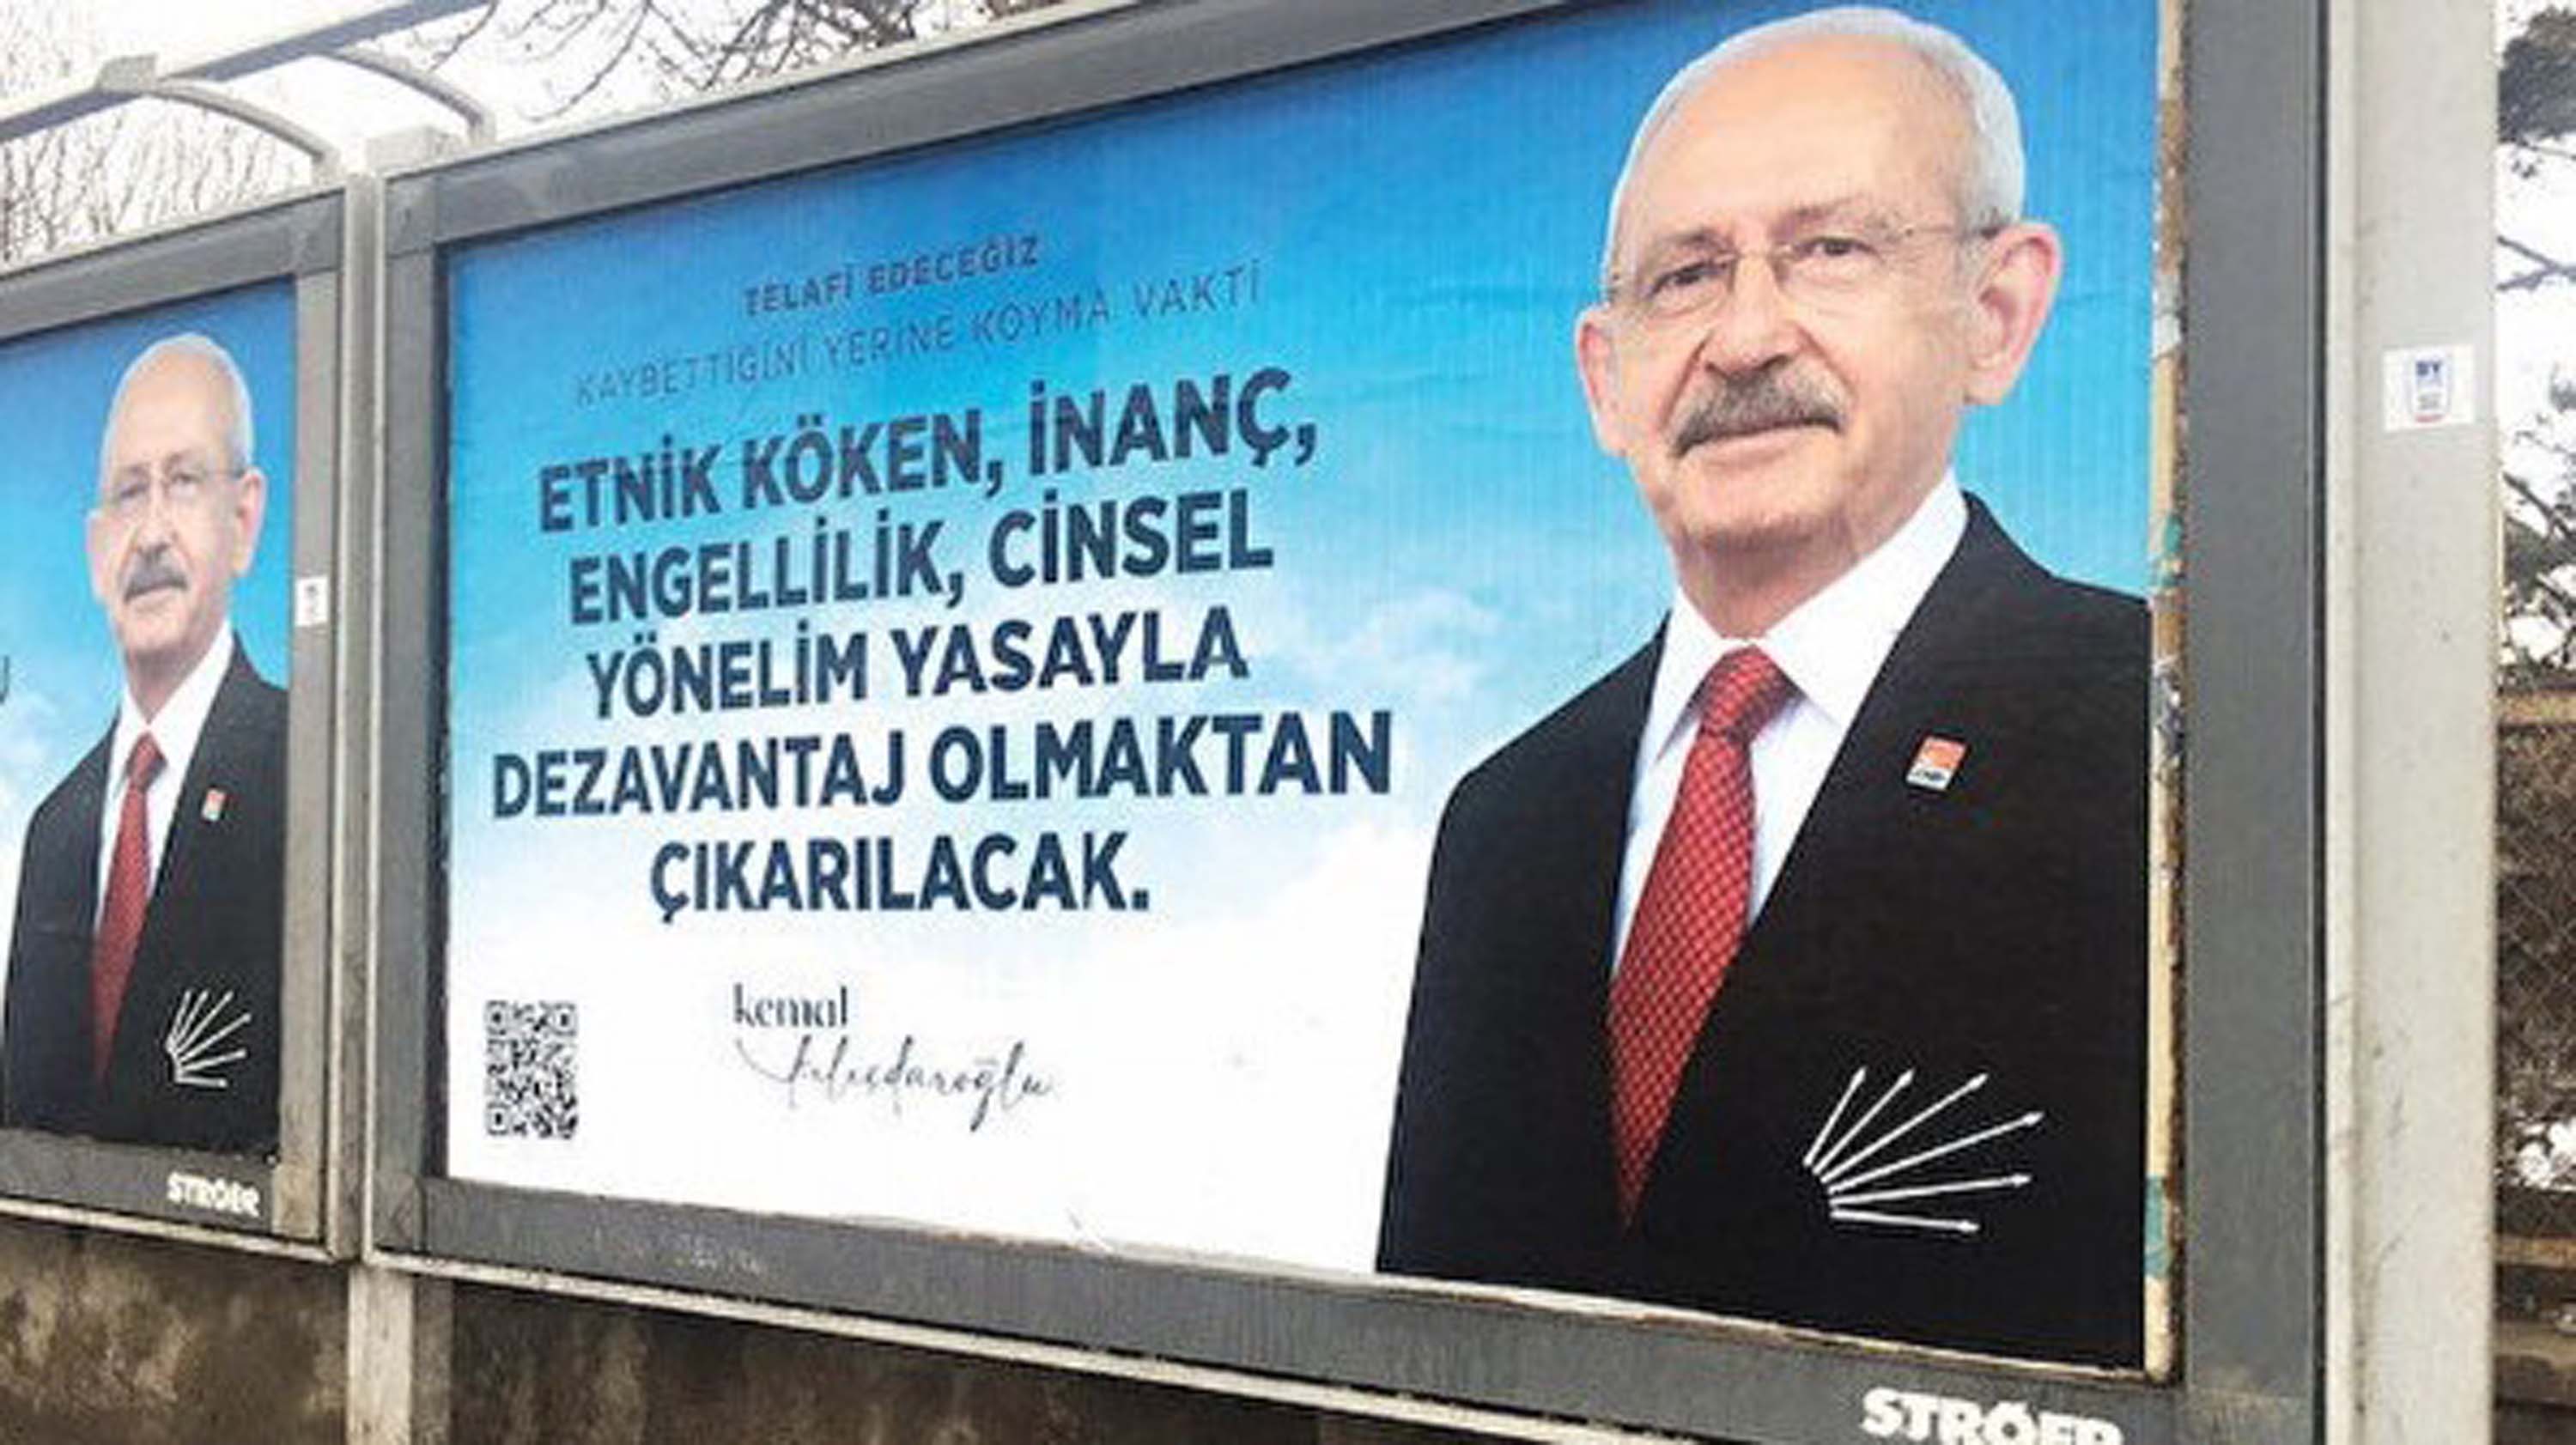 Kemal Kılıçdaroğlu, Telafi edeceğiz dedi, LGBT bireylerine ve evliliklerine yeşil ışık yaktı! Seçim vaadi şaşkına çevirdi! 